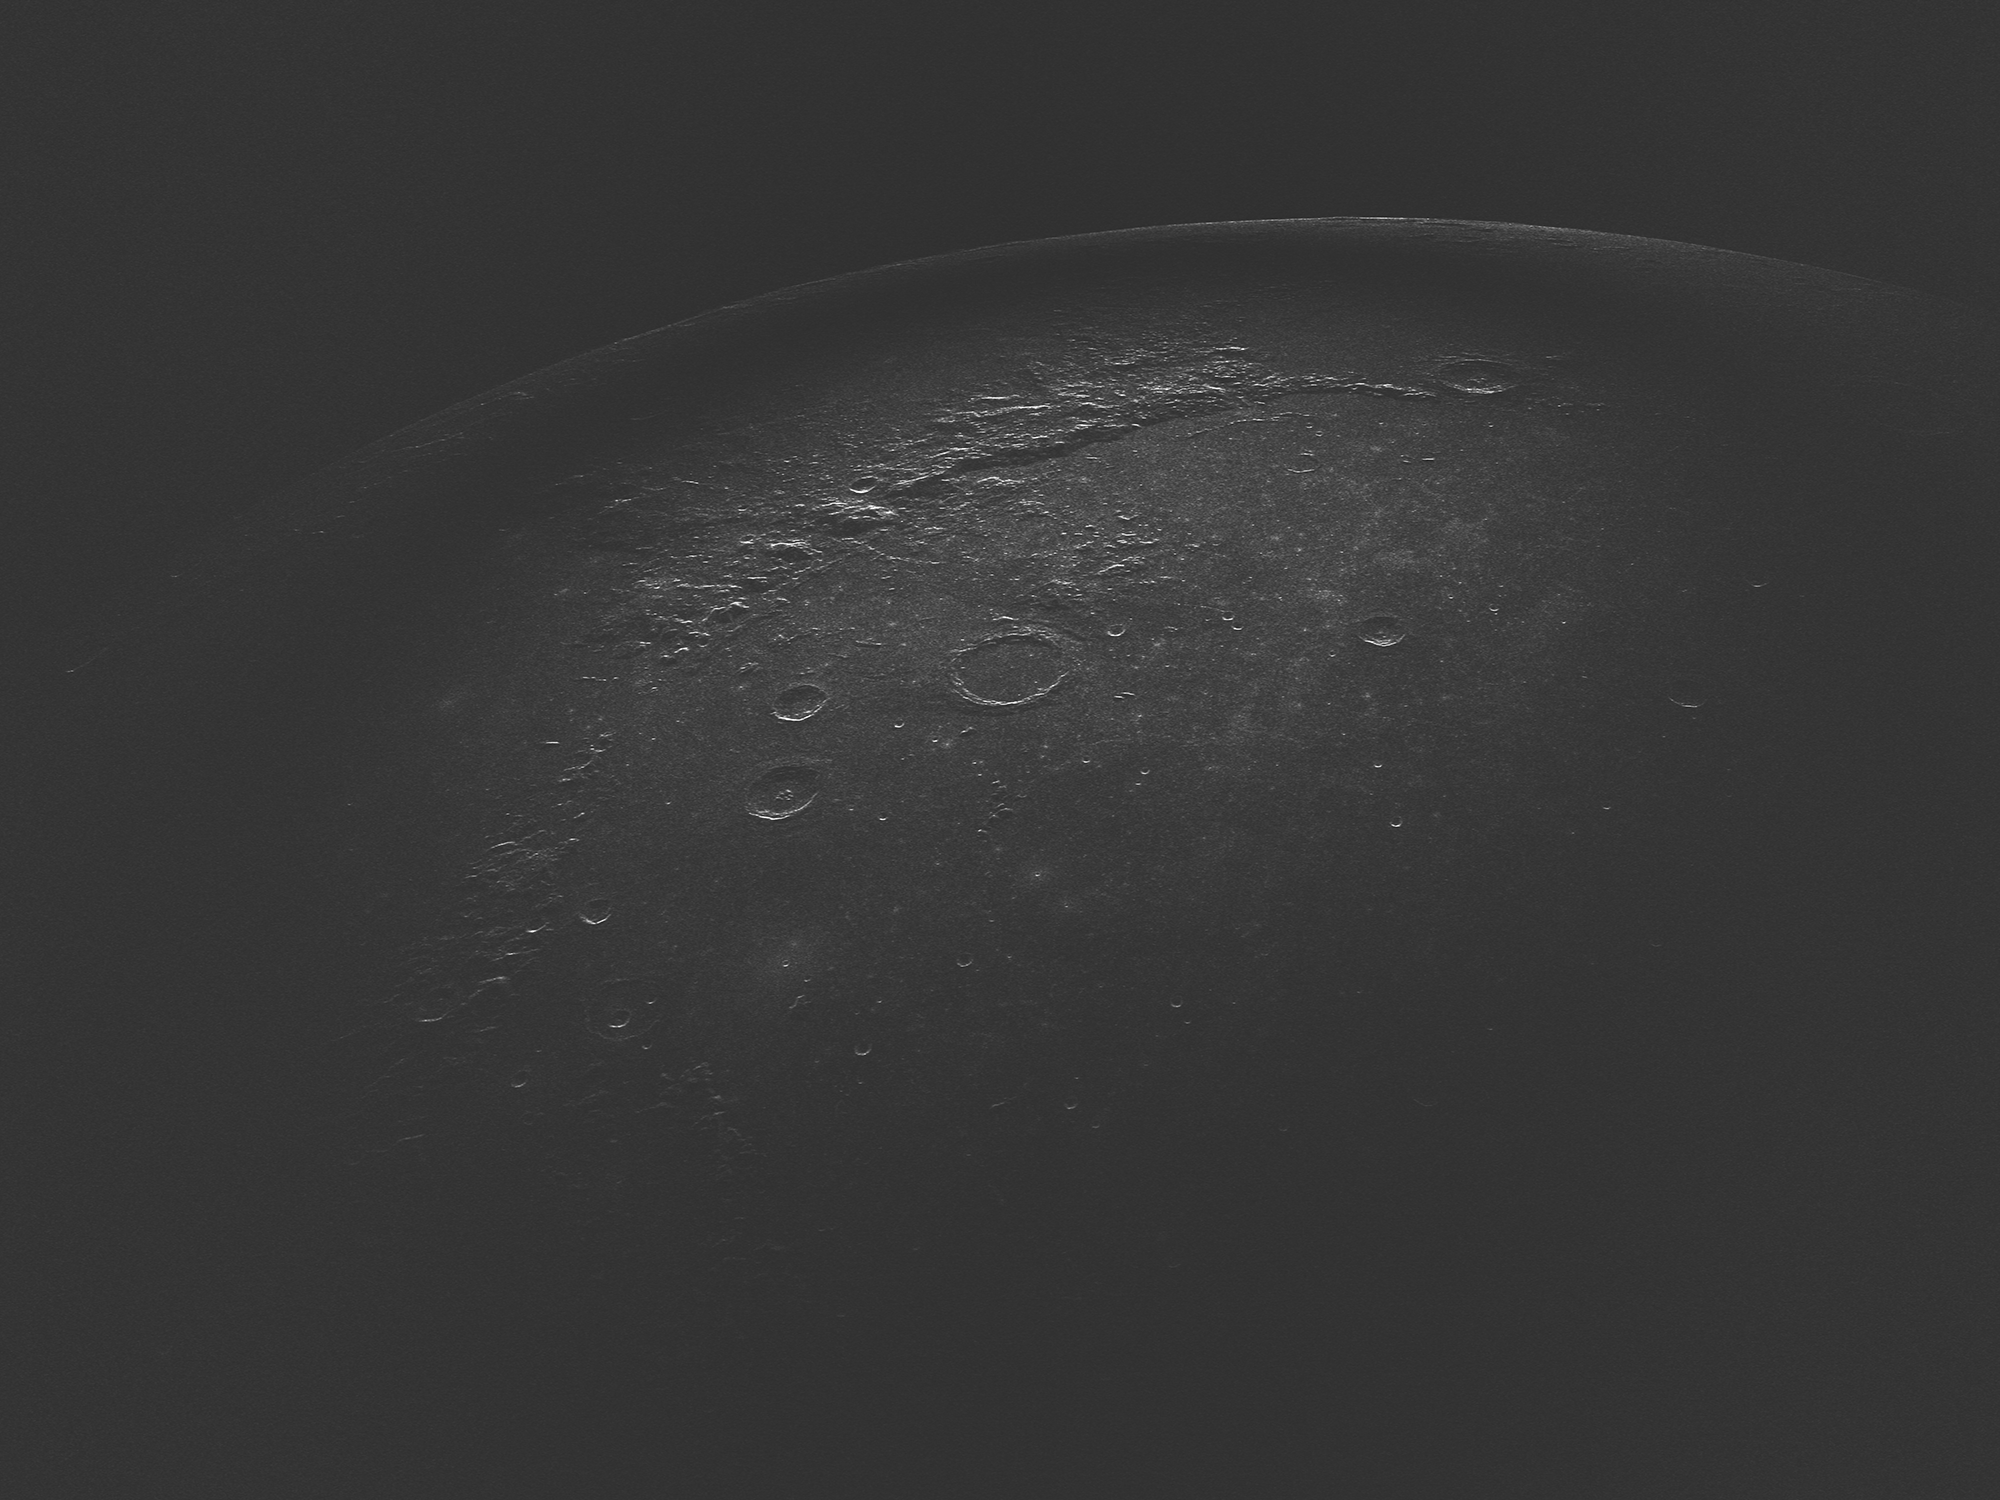 Зеркальная компонента радиолокационного изображения кратера Архимед и его окрестностей на длине волны 4.2 см.